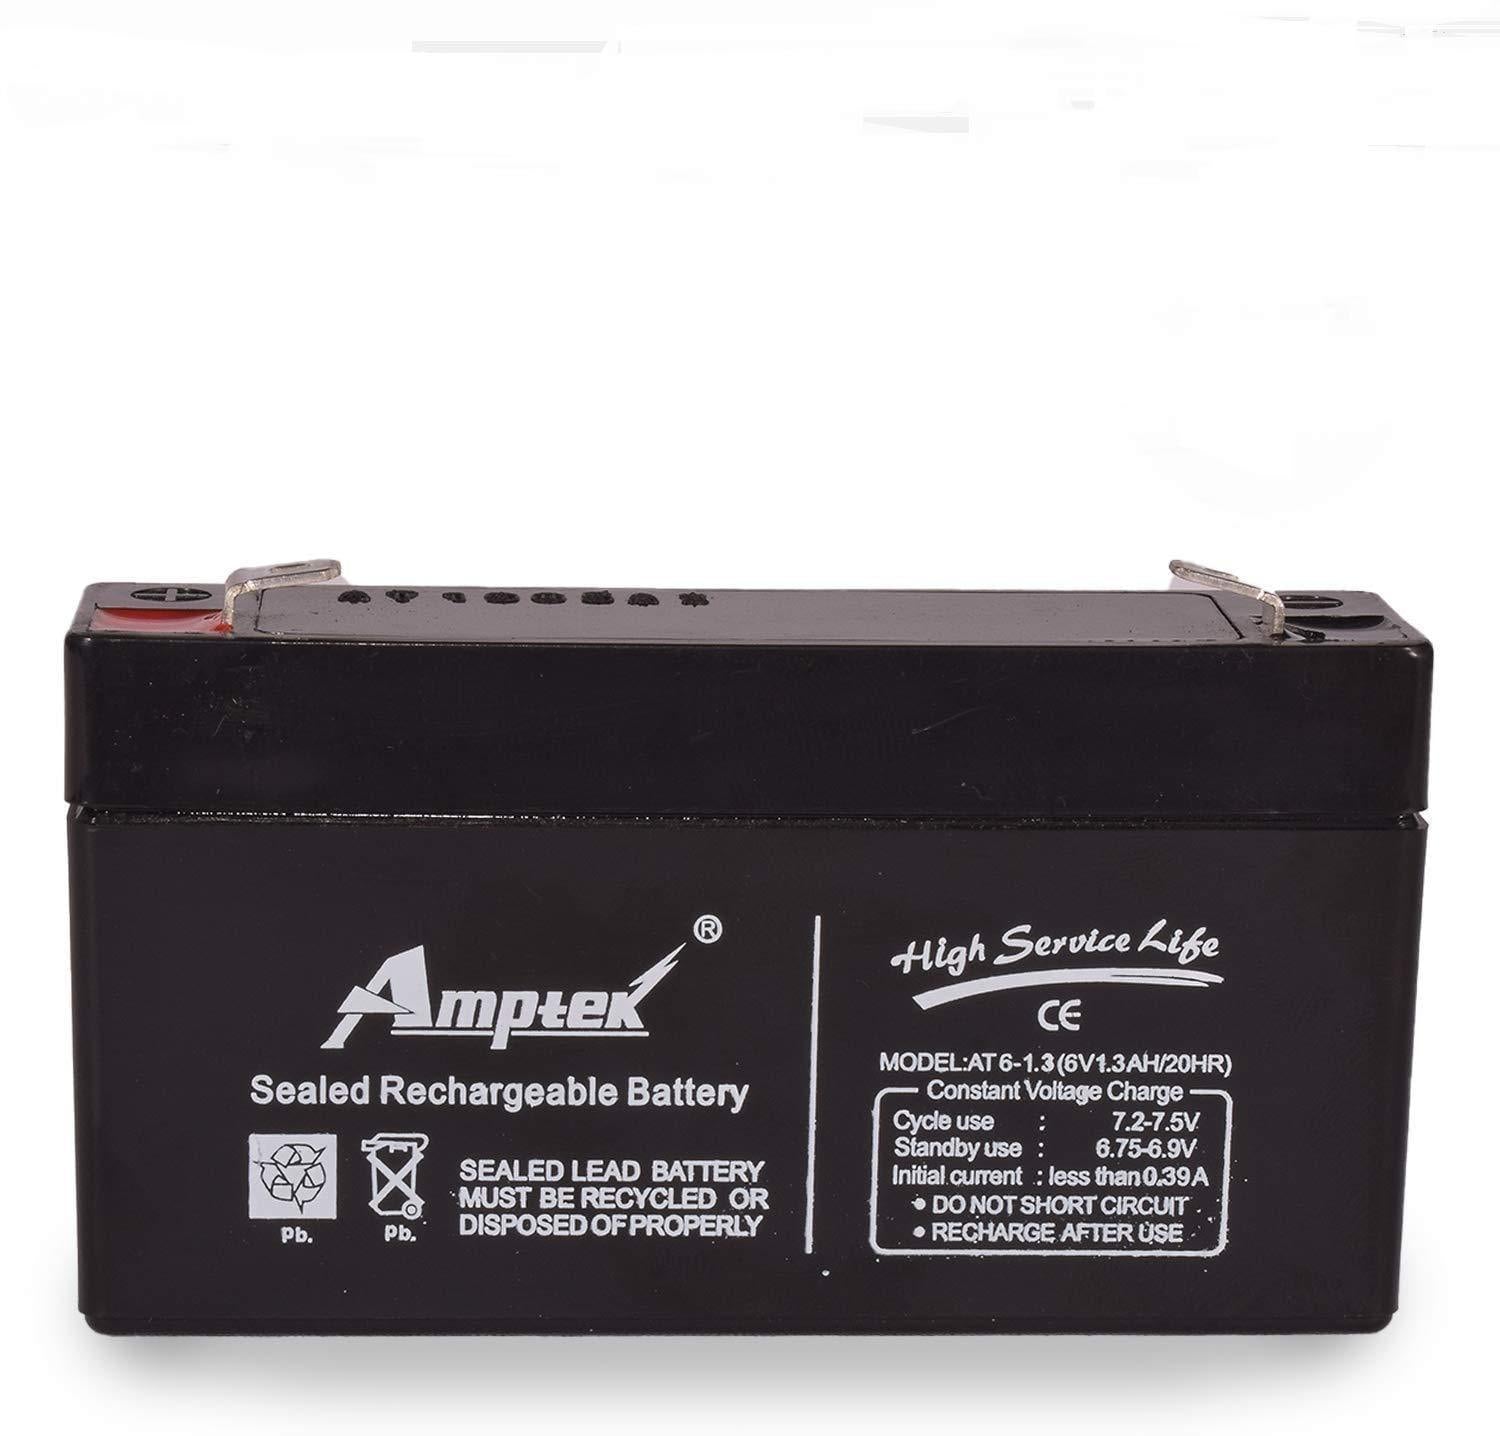 Dealsplant Amptek 6V 1.3AH / 20HR Sealed Rechargeable Battery-reachargeable battery-dealsplant